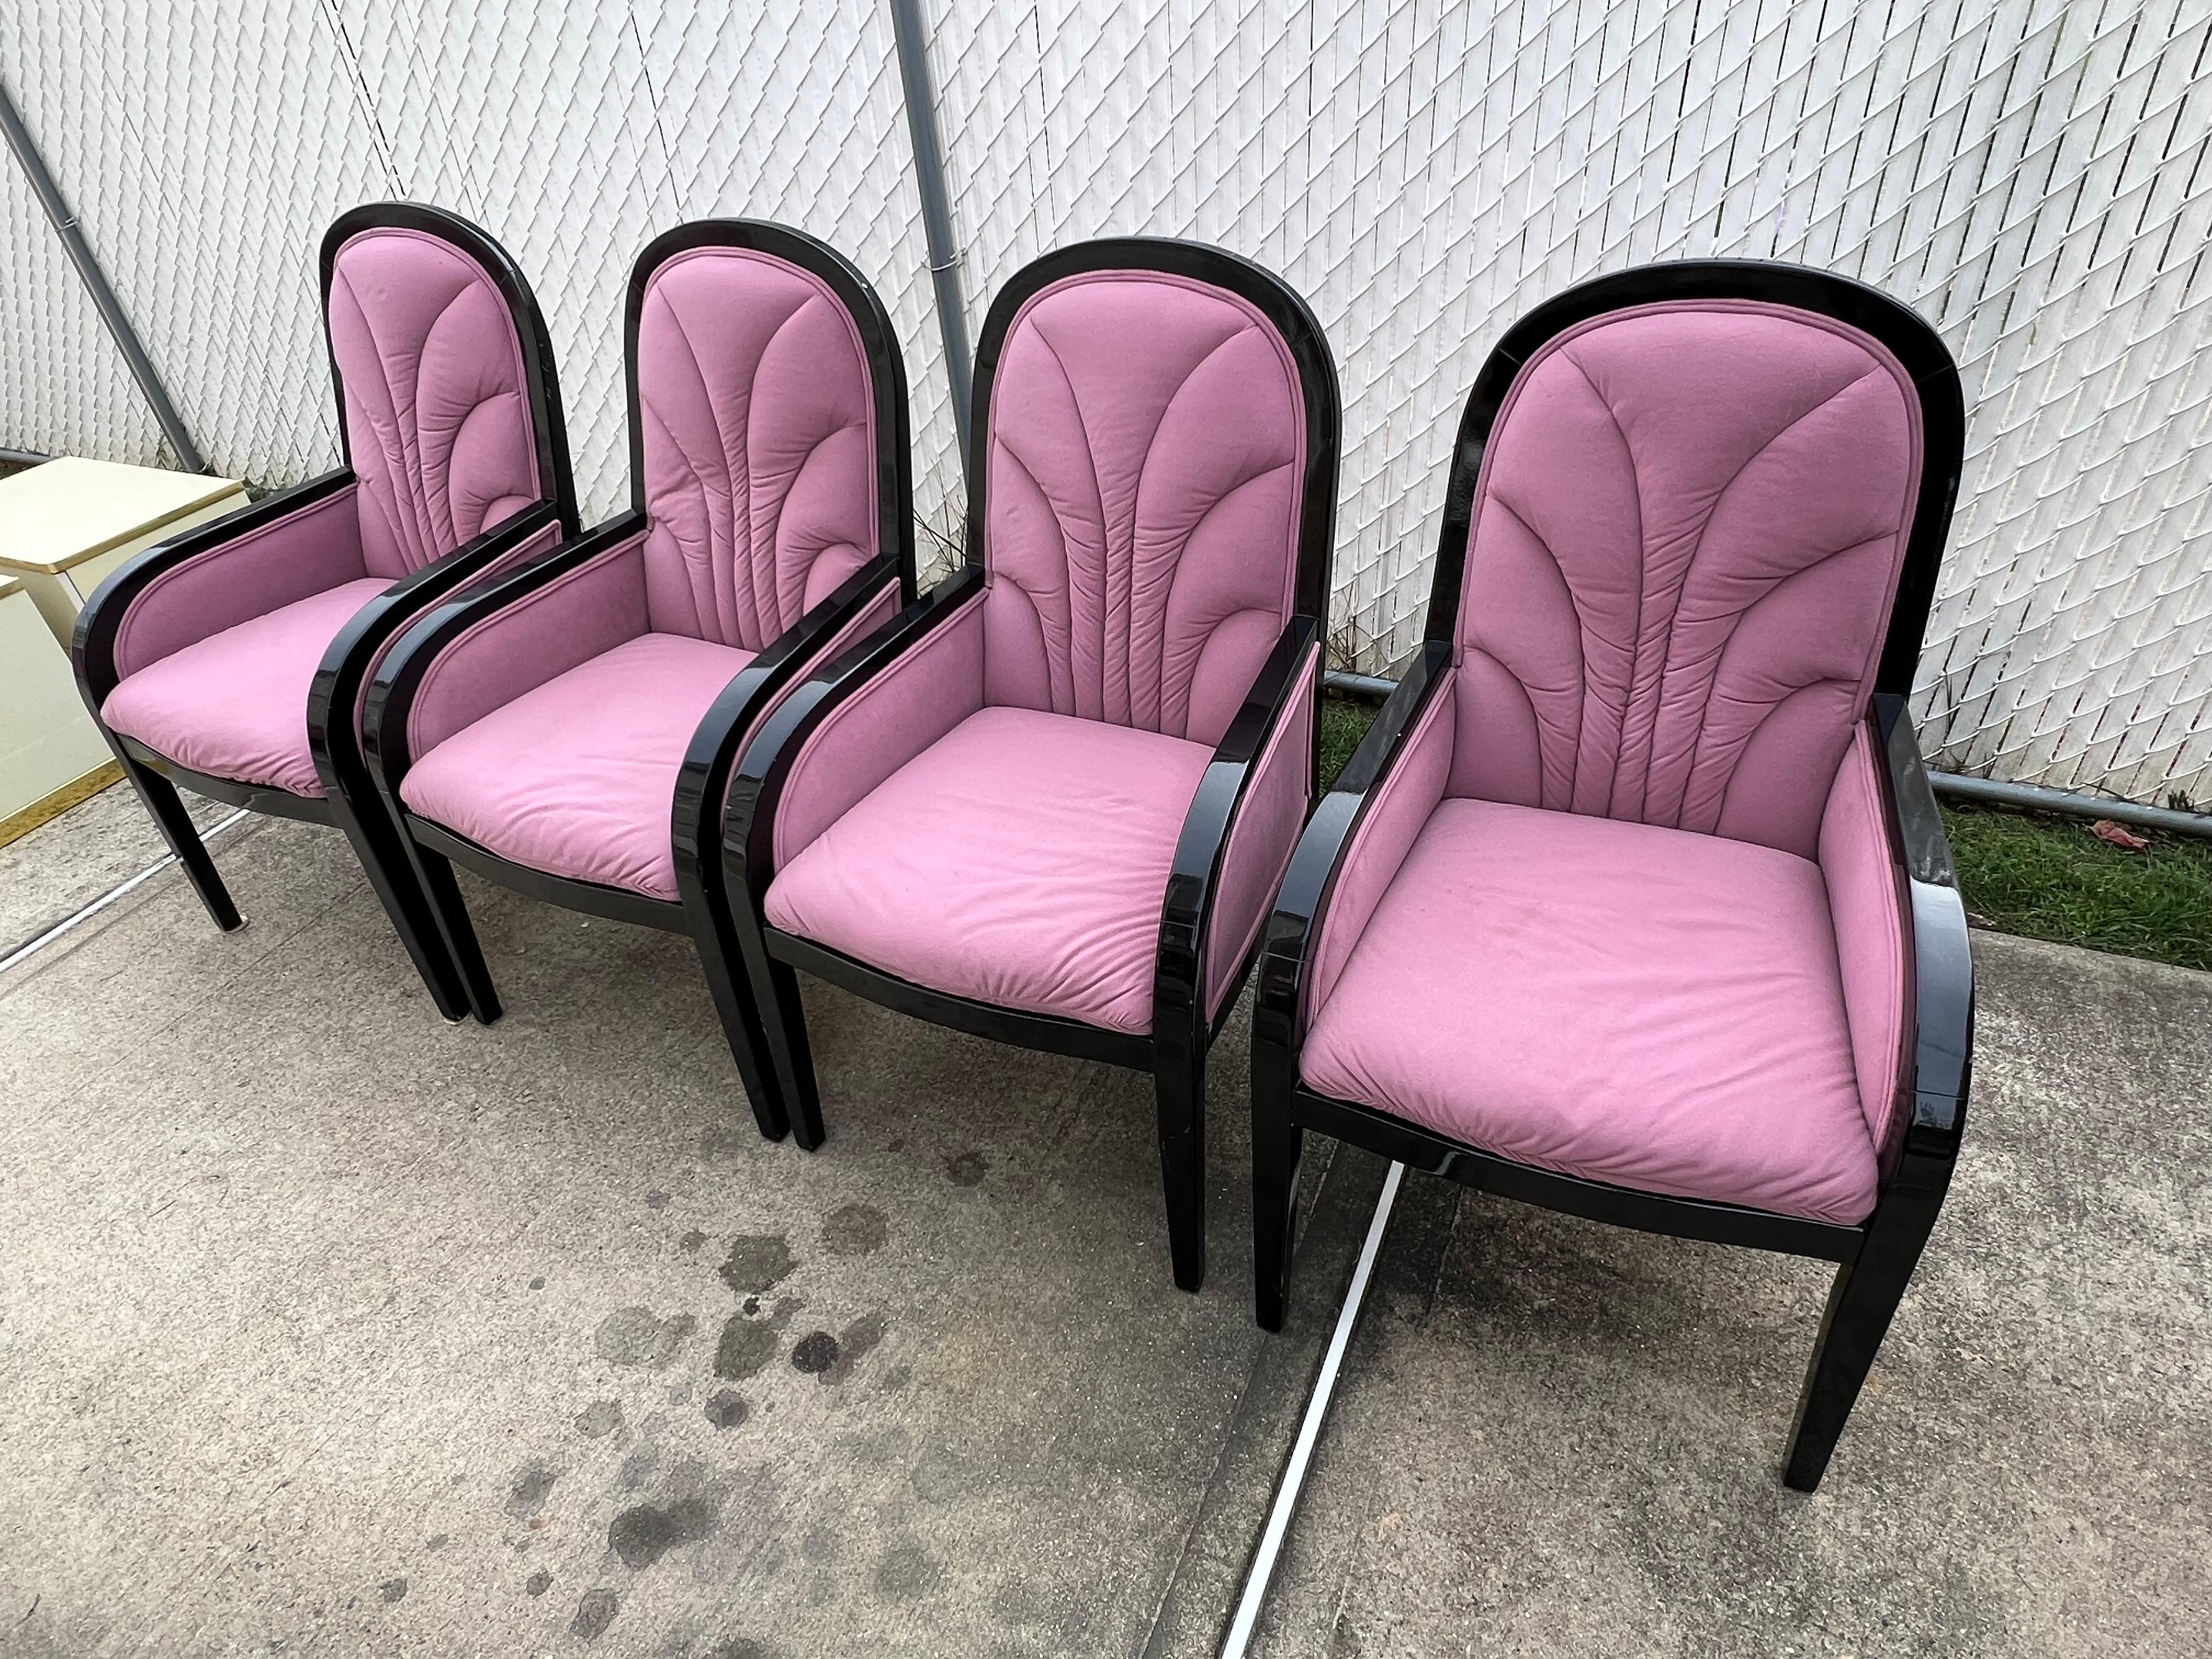 Chaises de salle à manger des années 1980 en velours rose laqué noir - un ensemble de 4. 

L'accoudoir laqué noir et le dossier arqué donnent à ces chaises un air des années 80.